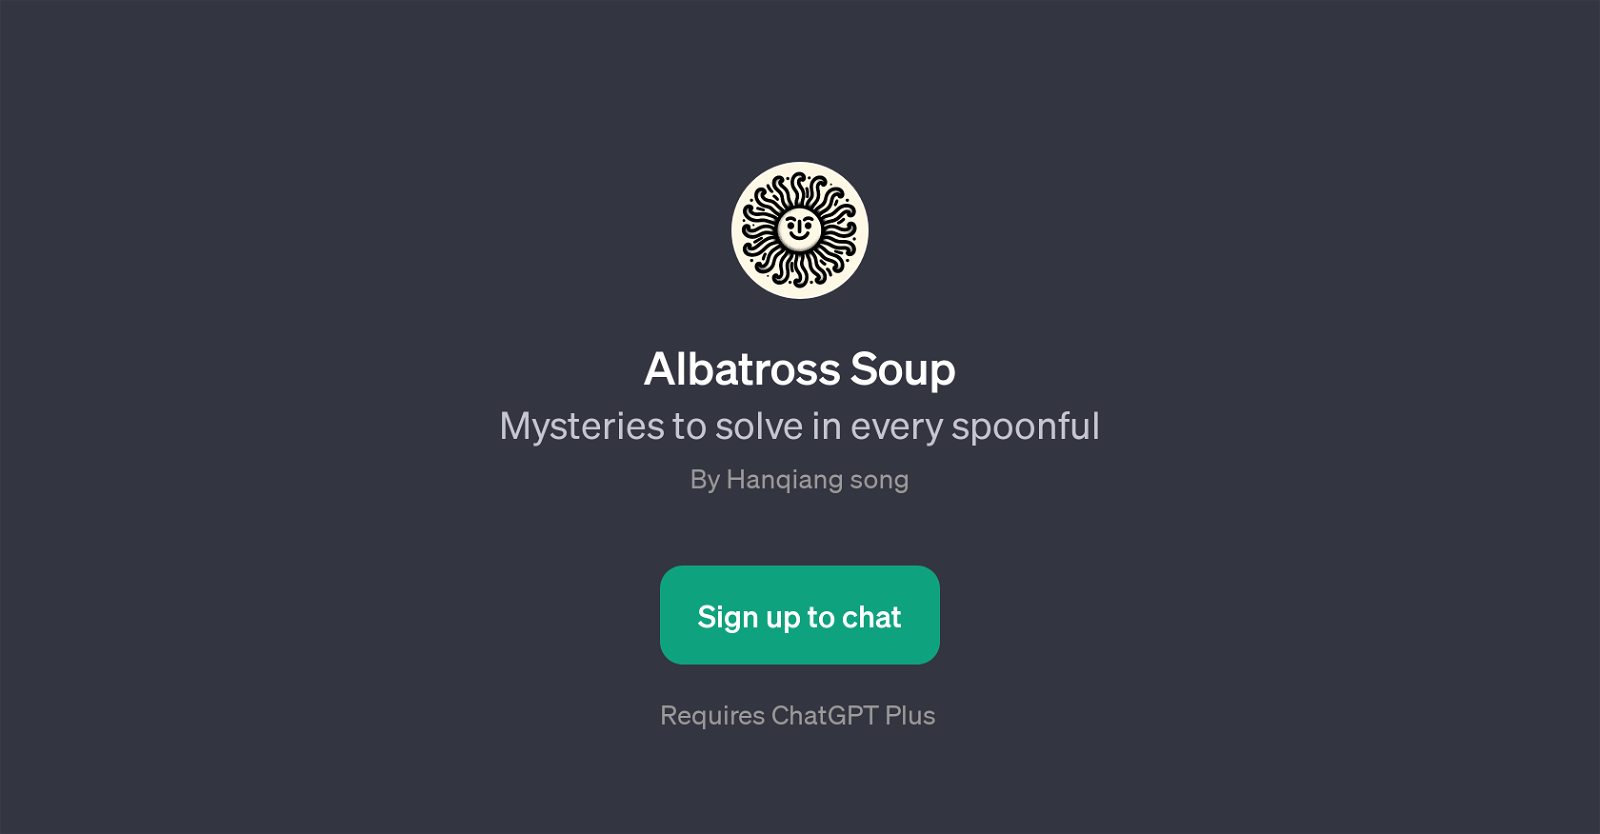 Albatross Soup website